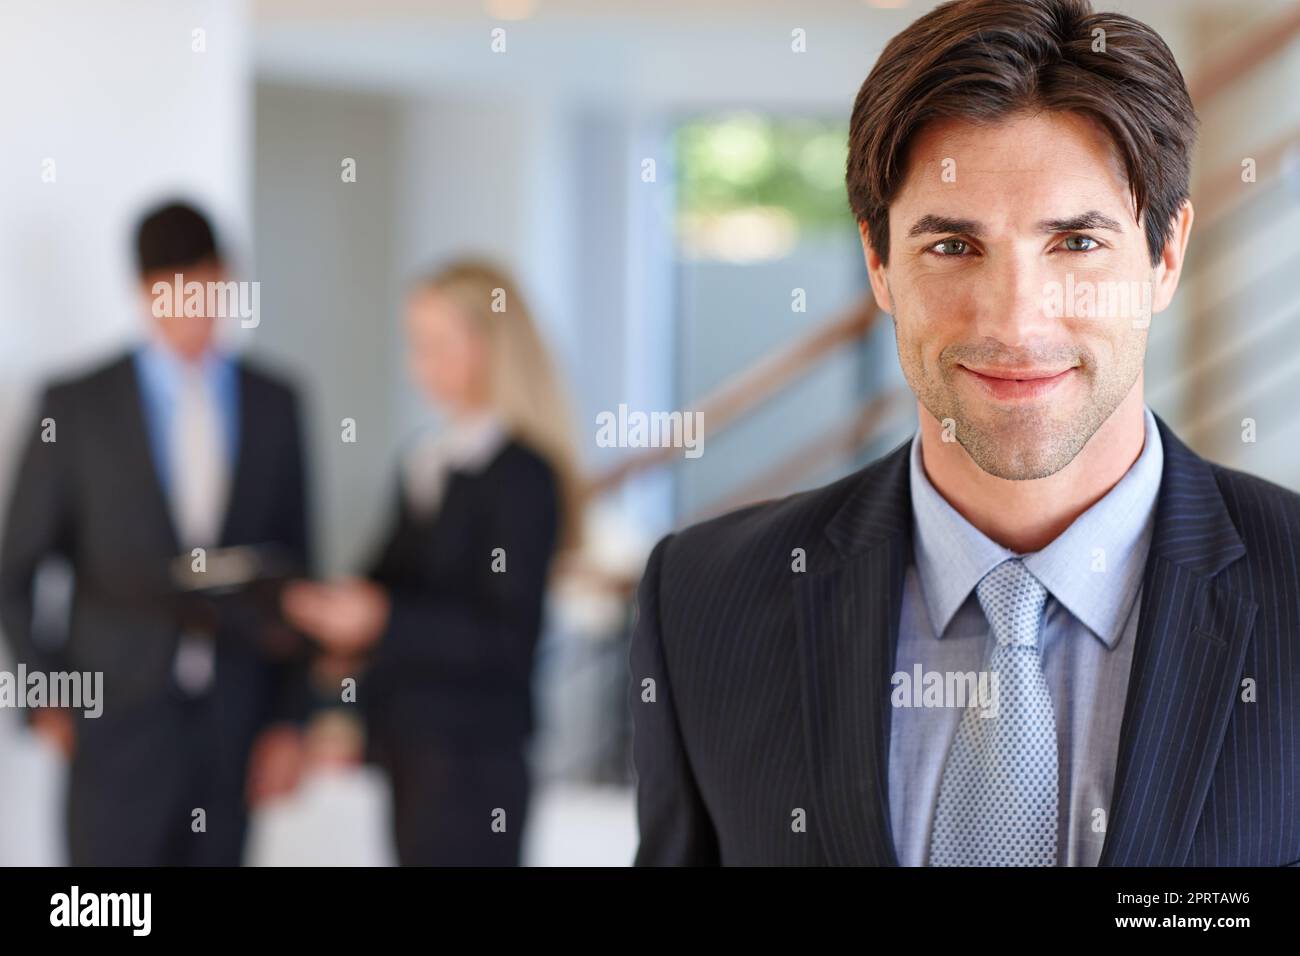 Das Geschäft kommt ihm natürlich zu. Porträt eines Geschäftsmannes, der in einem Gebäude mit zwei Kollegen im Hintergrund steht. Stockfoto